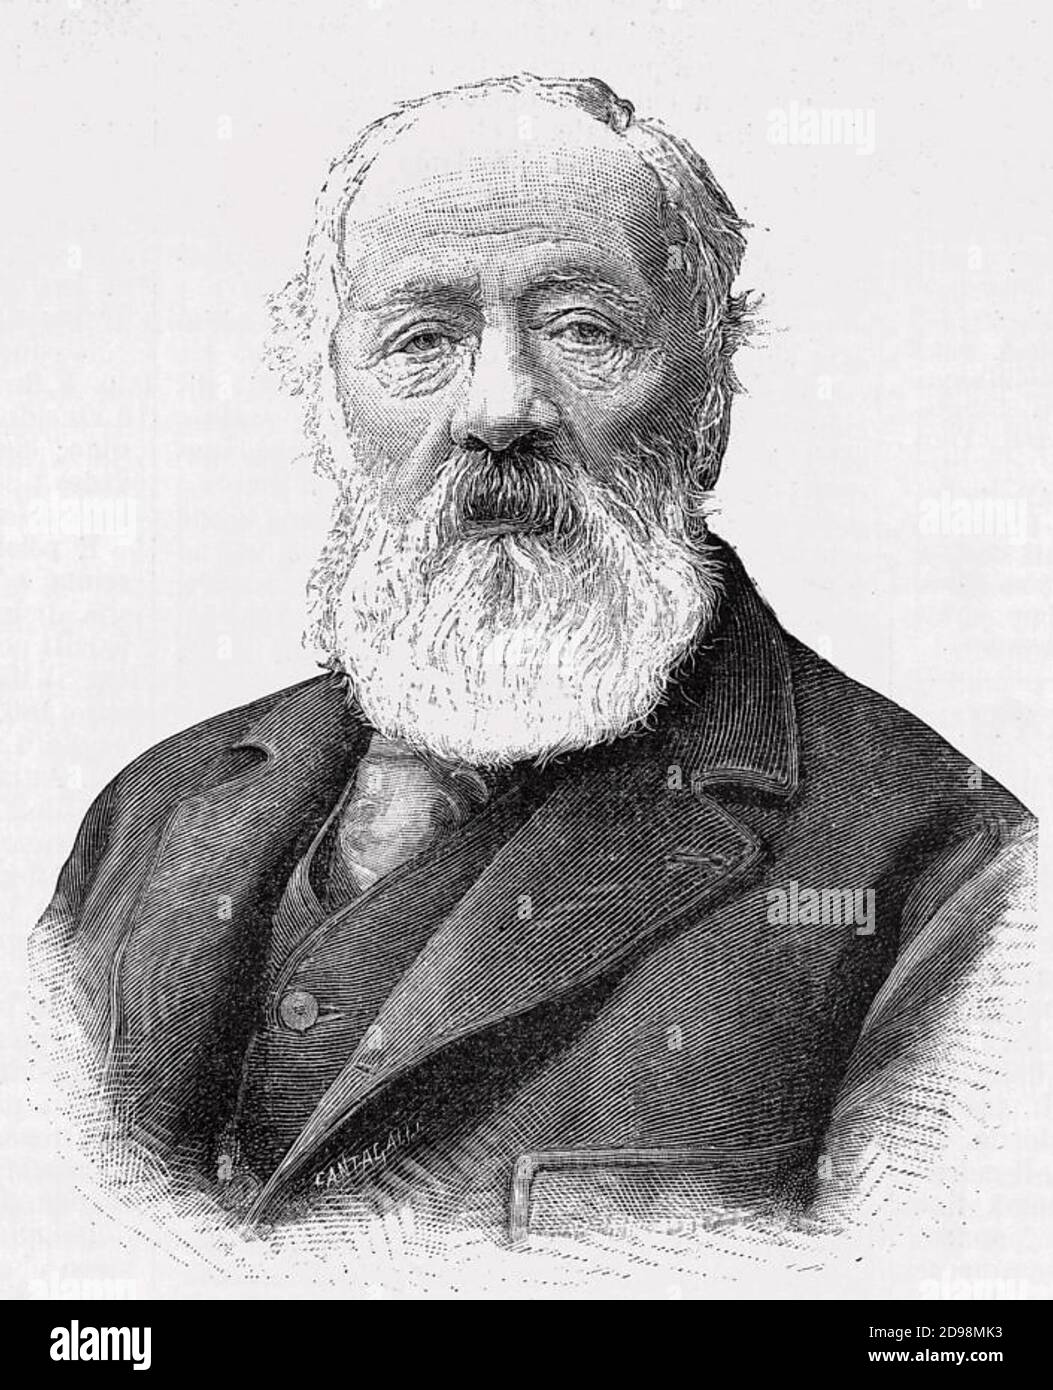 ANTONIO MEUCCI (1808-1889) Italian inventor, about 1879 Stock Photo